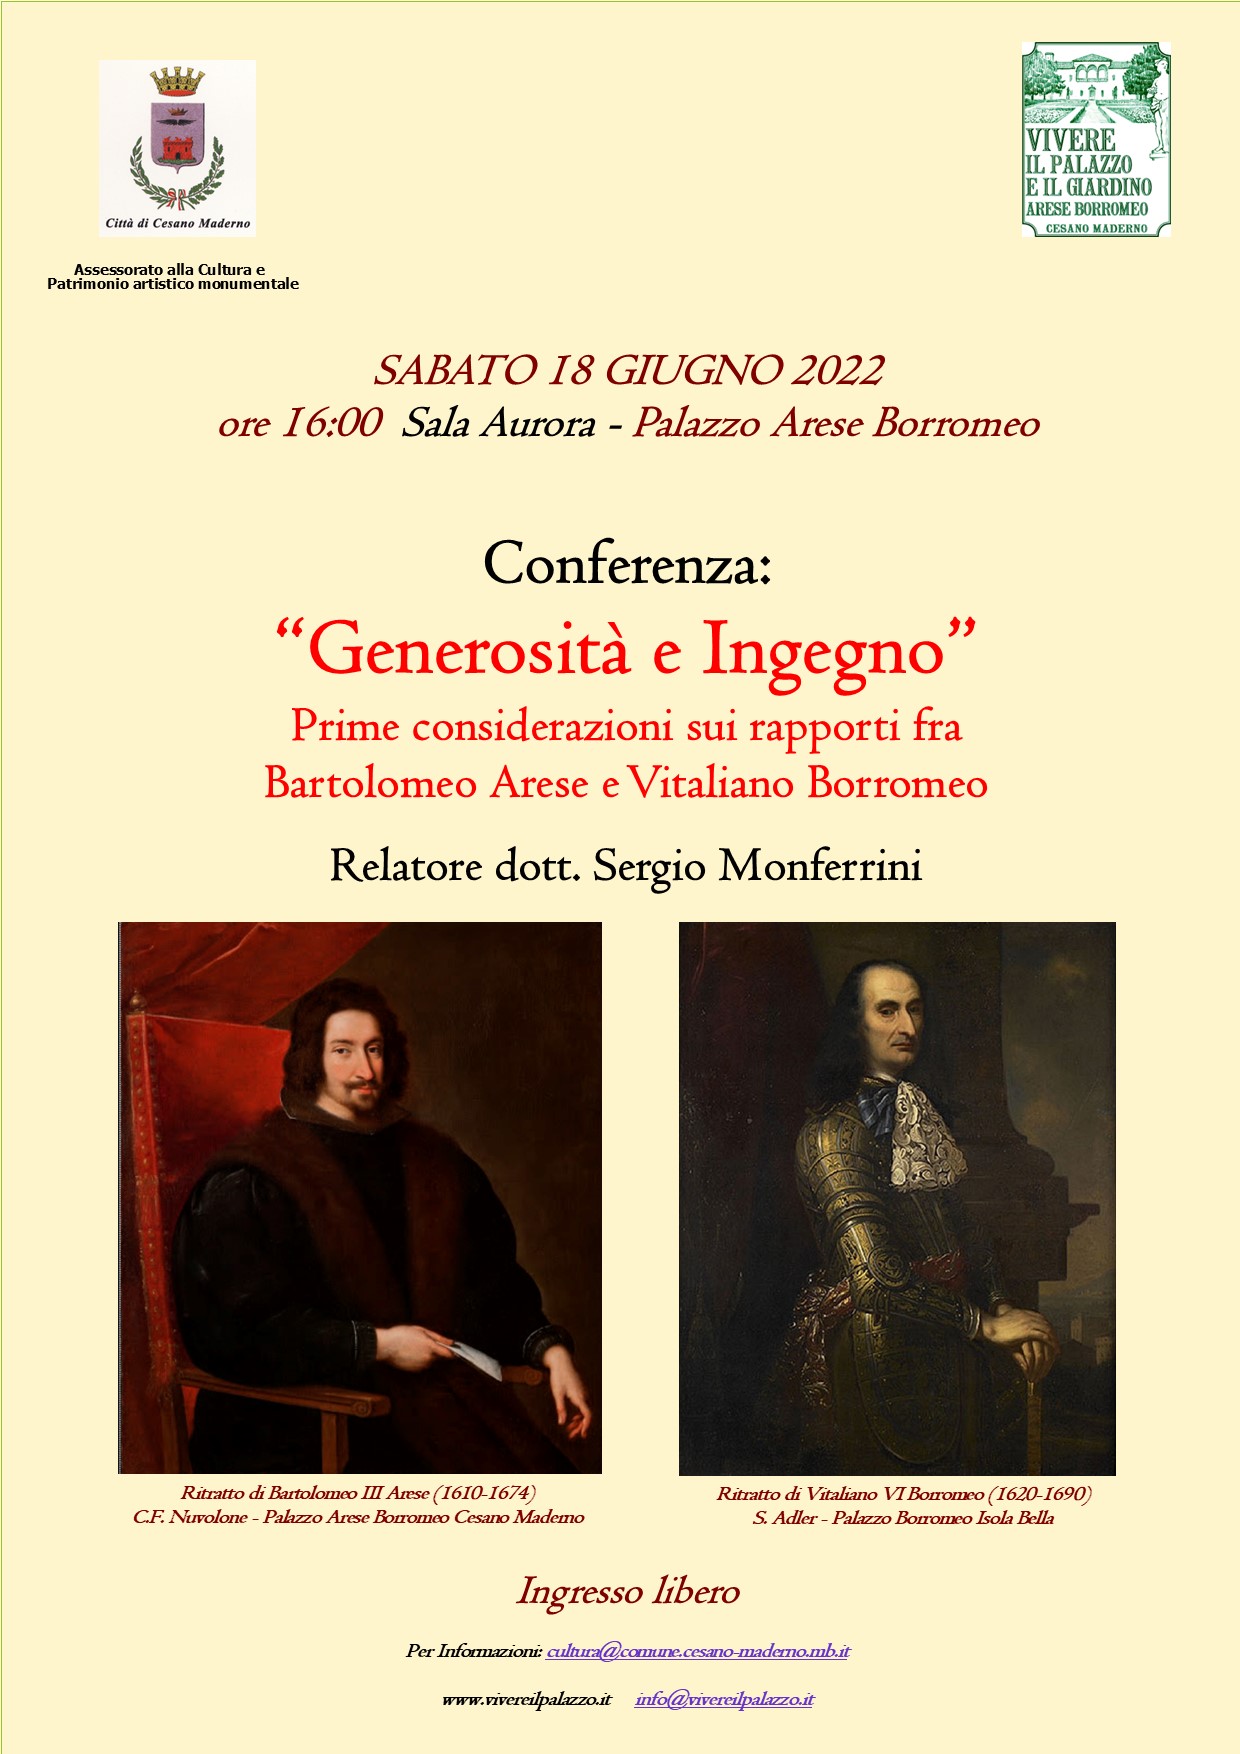 Generosità e Ingegno: Prime considerazioni sui rapporti fra Bartolomeo Arese e Vitaliano Borromeo